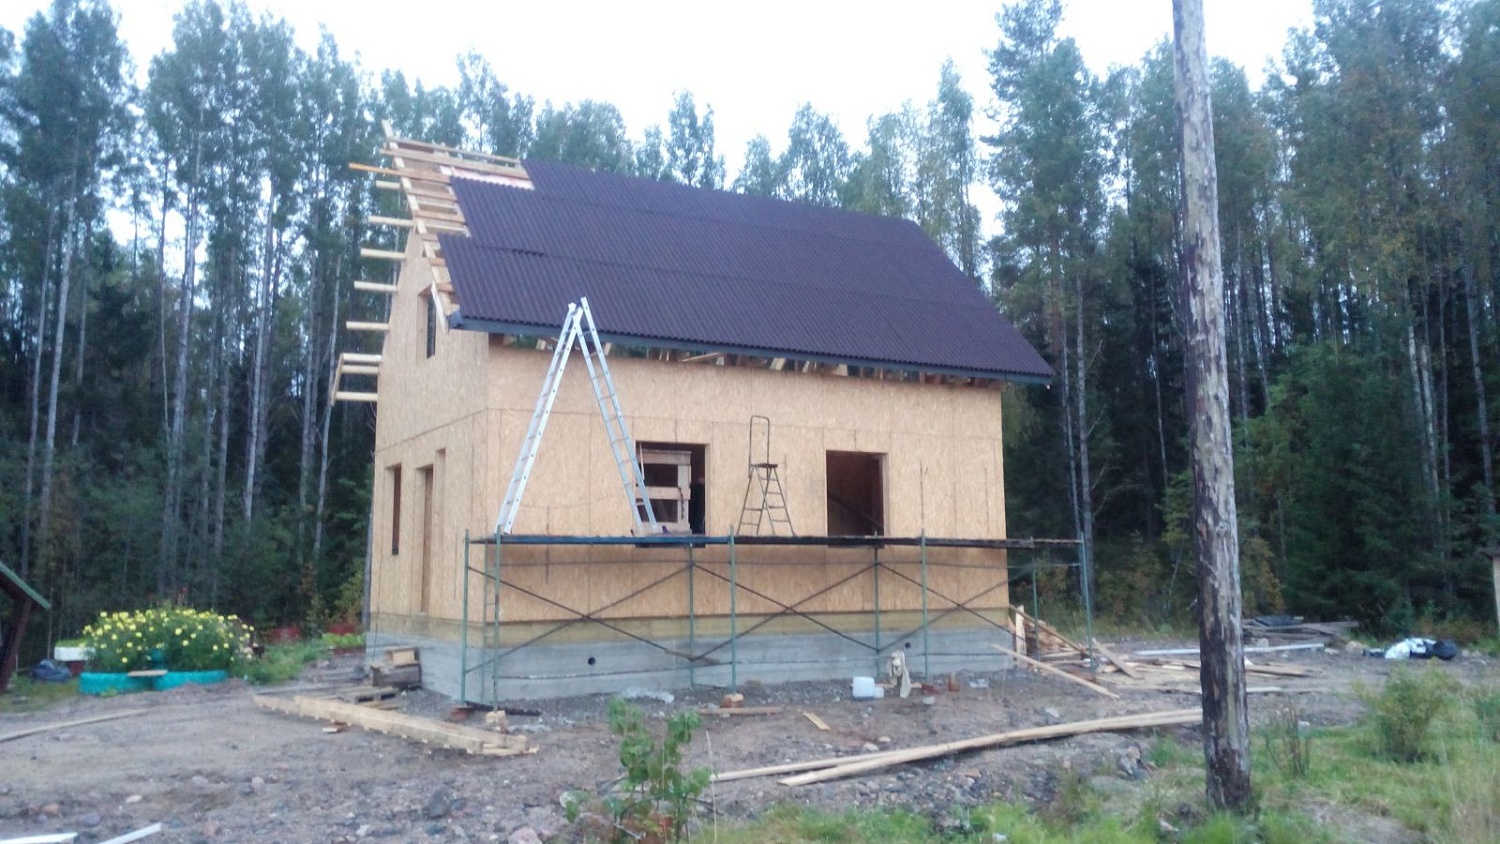 Строительство каркасного дома "Сельга, 147мм с цокольным перекрытием" в Карелии 2020 году.